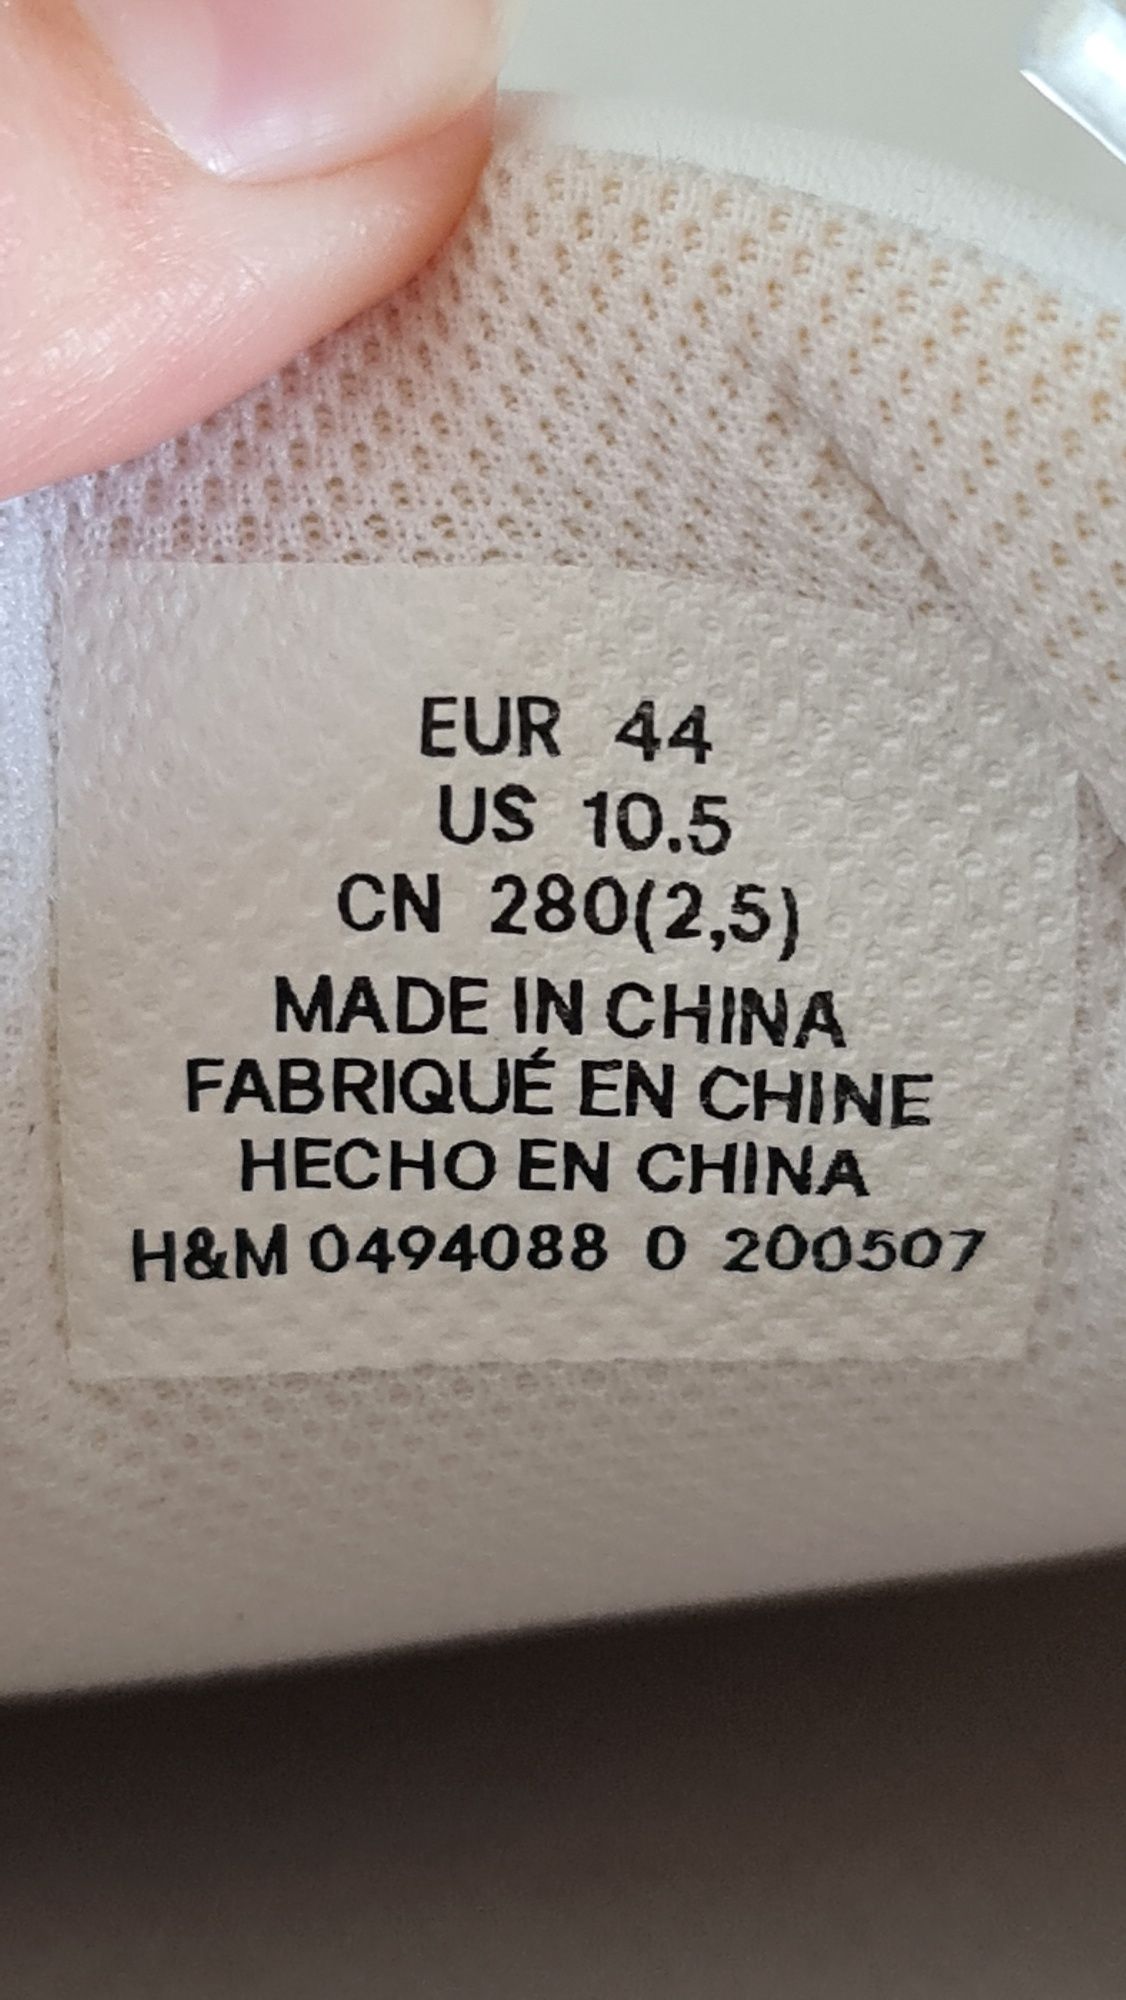 Белые мужские кеды кроссовки H&M